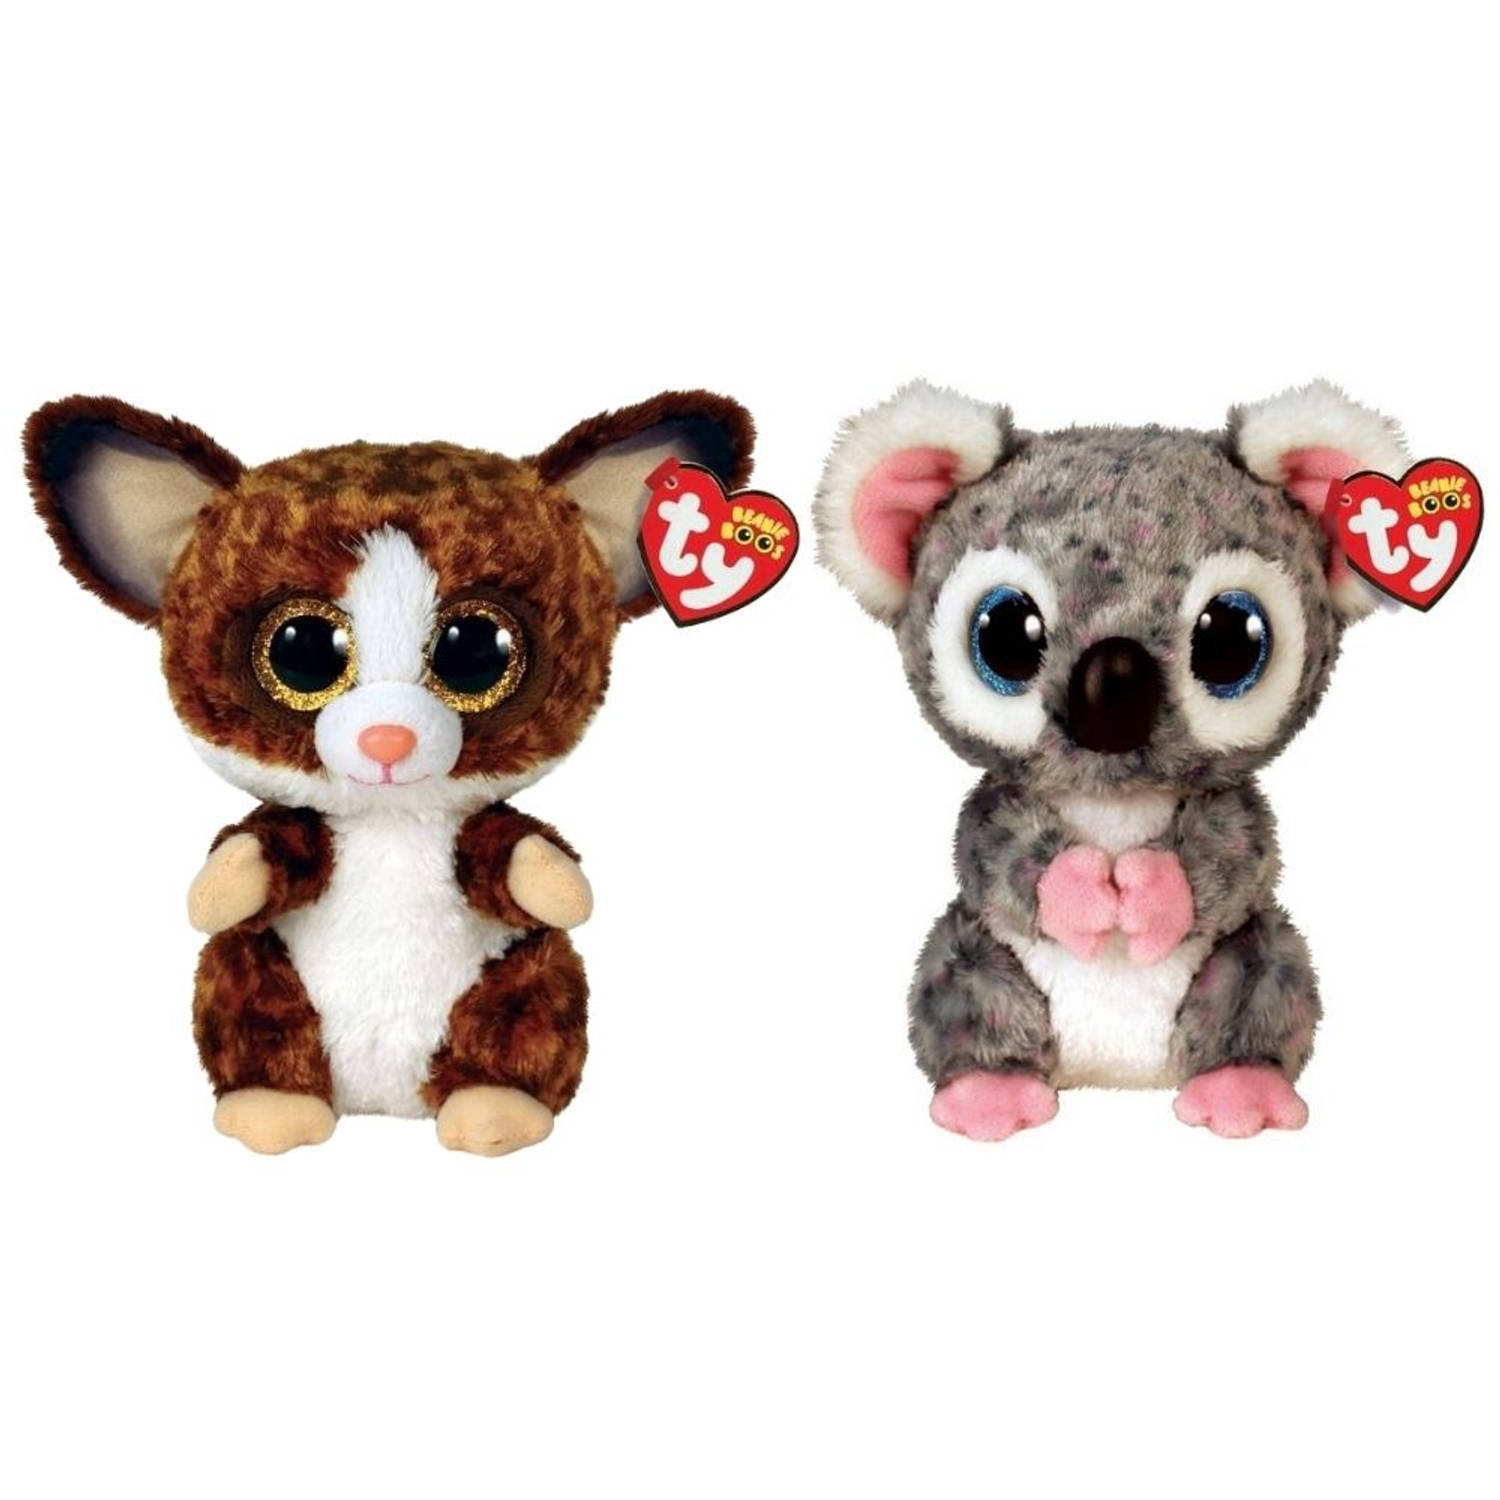 Ty - Knuffel - Beanie Boo's - Bush Baby Galago & Karli Koala